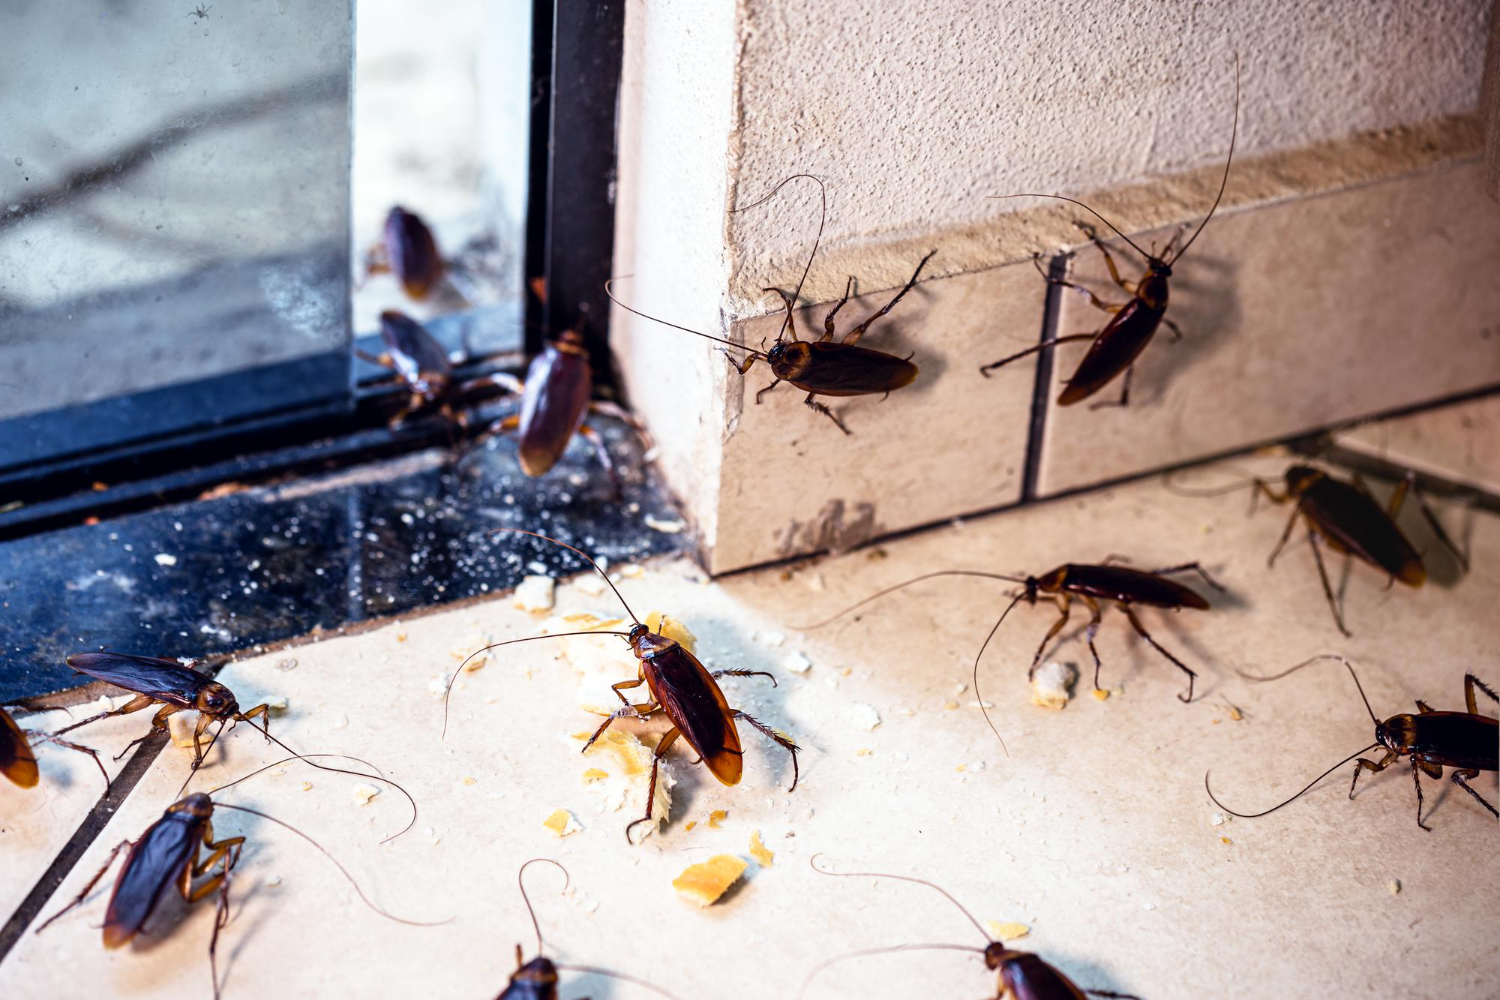 cucaracha-periplaneta-conocida-como-cucaracha-roja-o-cucaracha-americana-cucarachas-que-invaden-apartamento-interior-traves-puerta